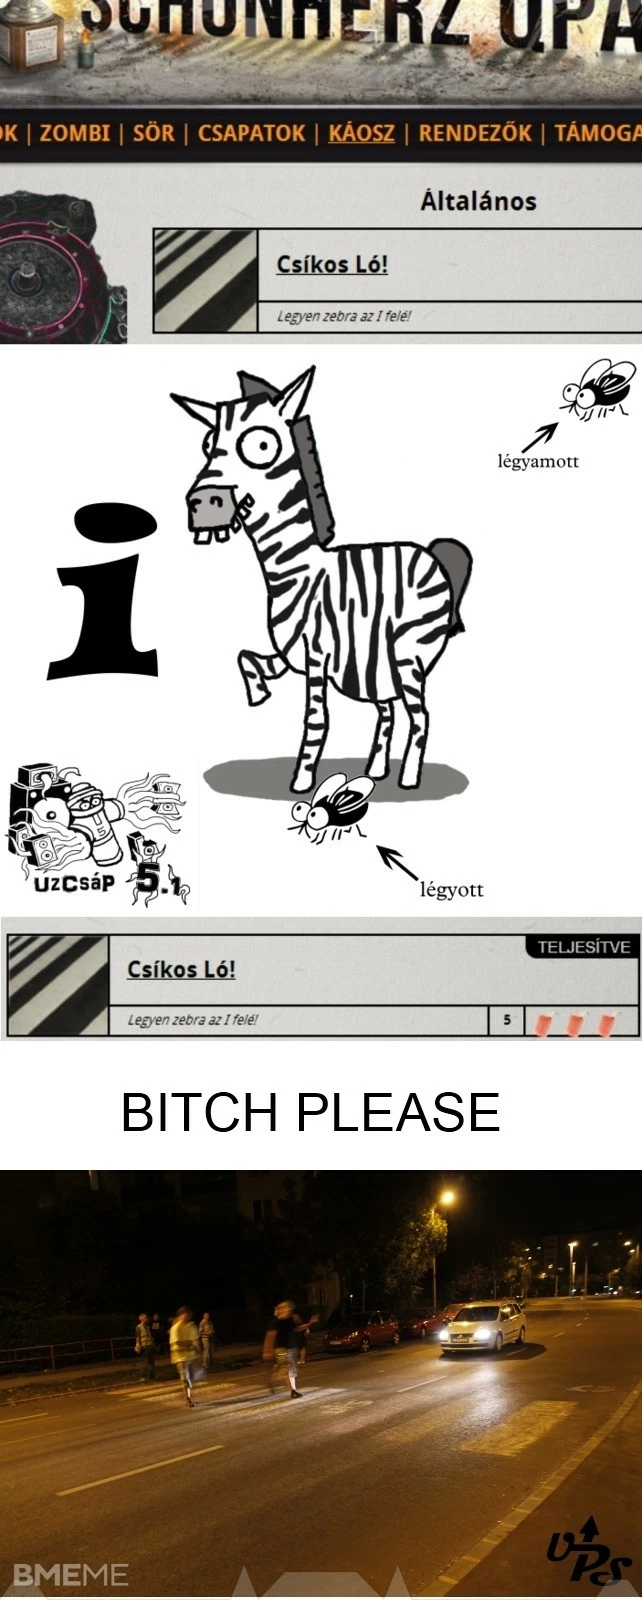 Van zebra az I felé